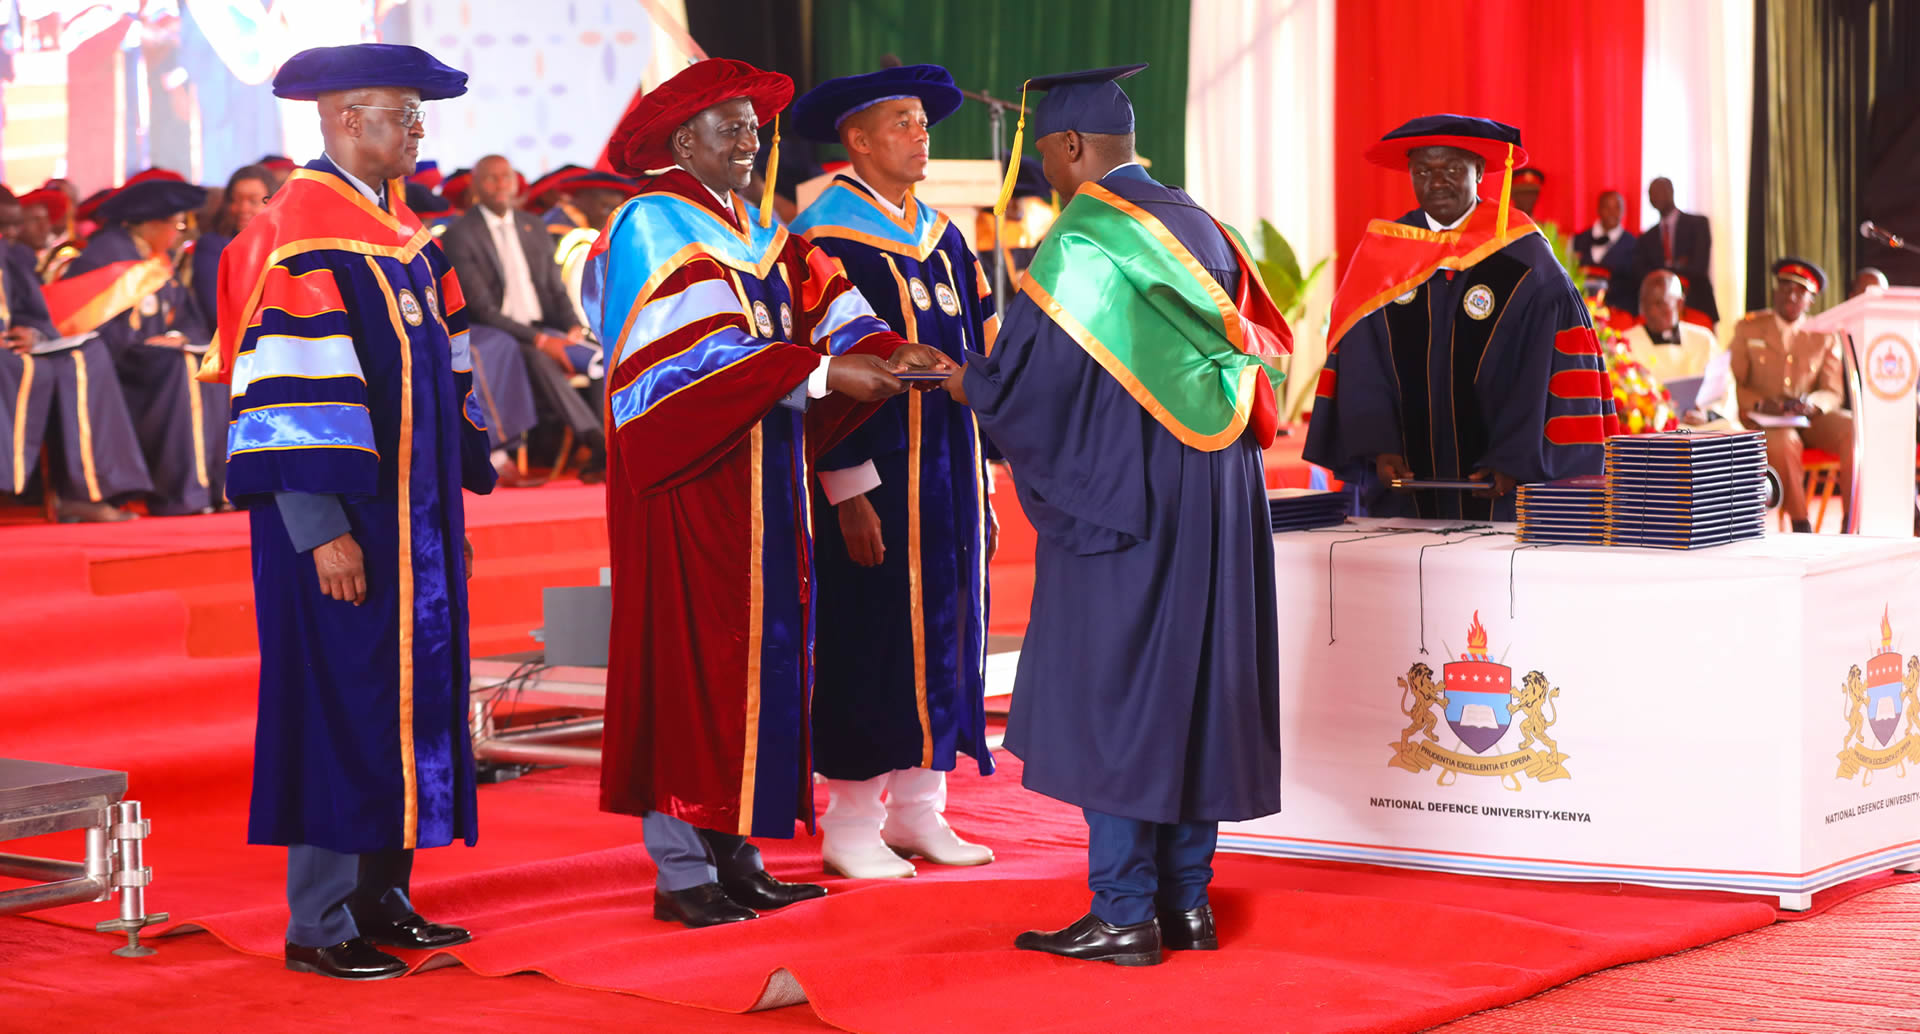 National Defence University- Kenya Celebrates 1st Graduation Ceremony